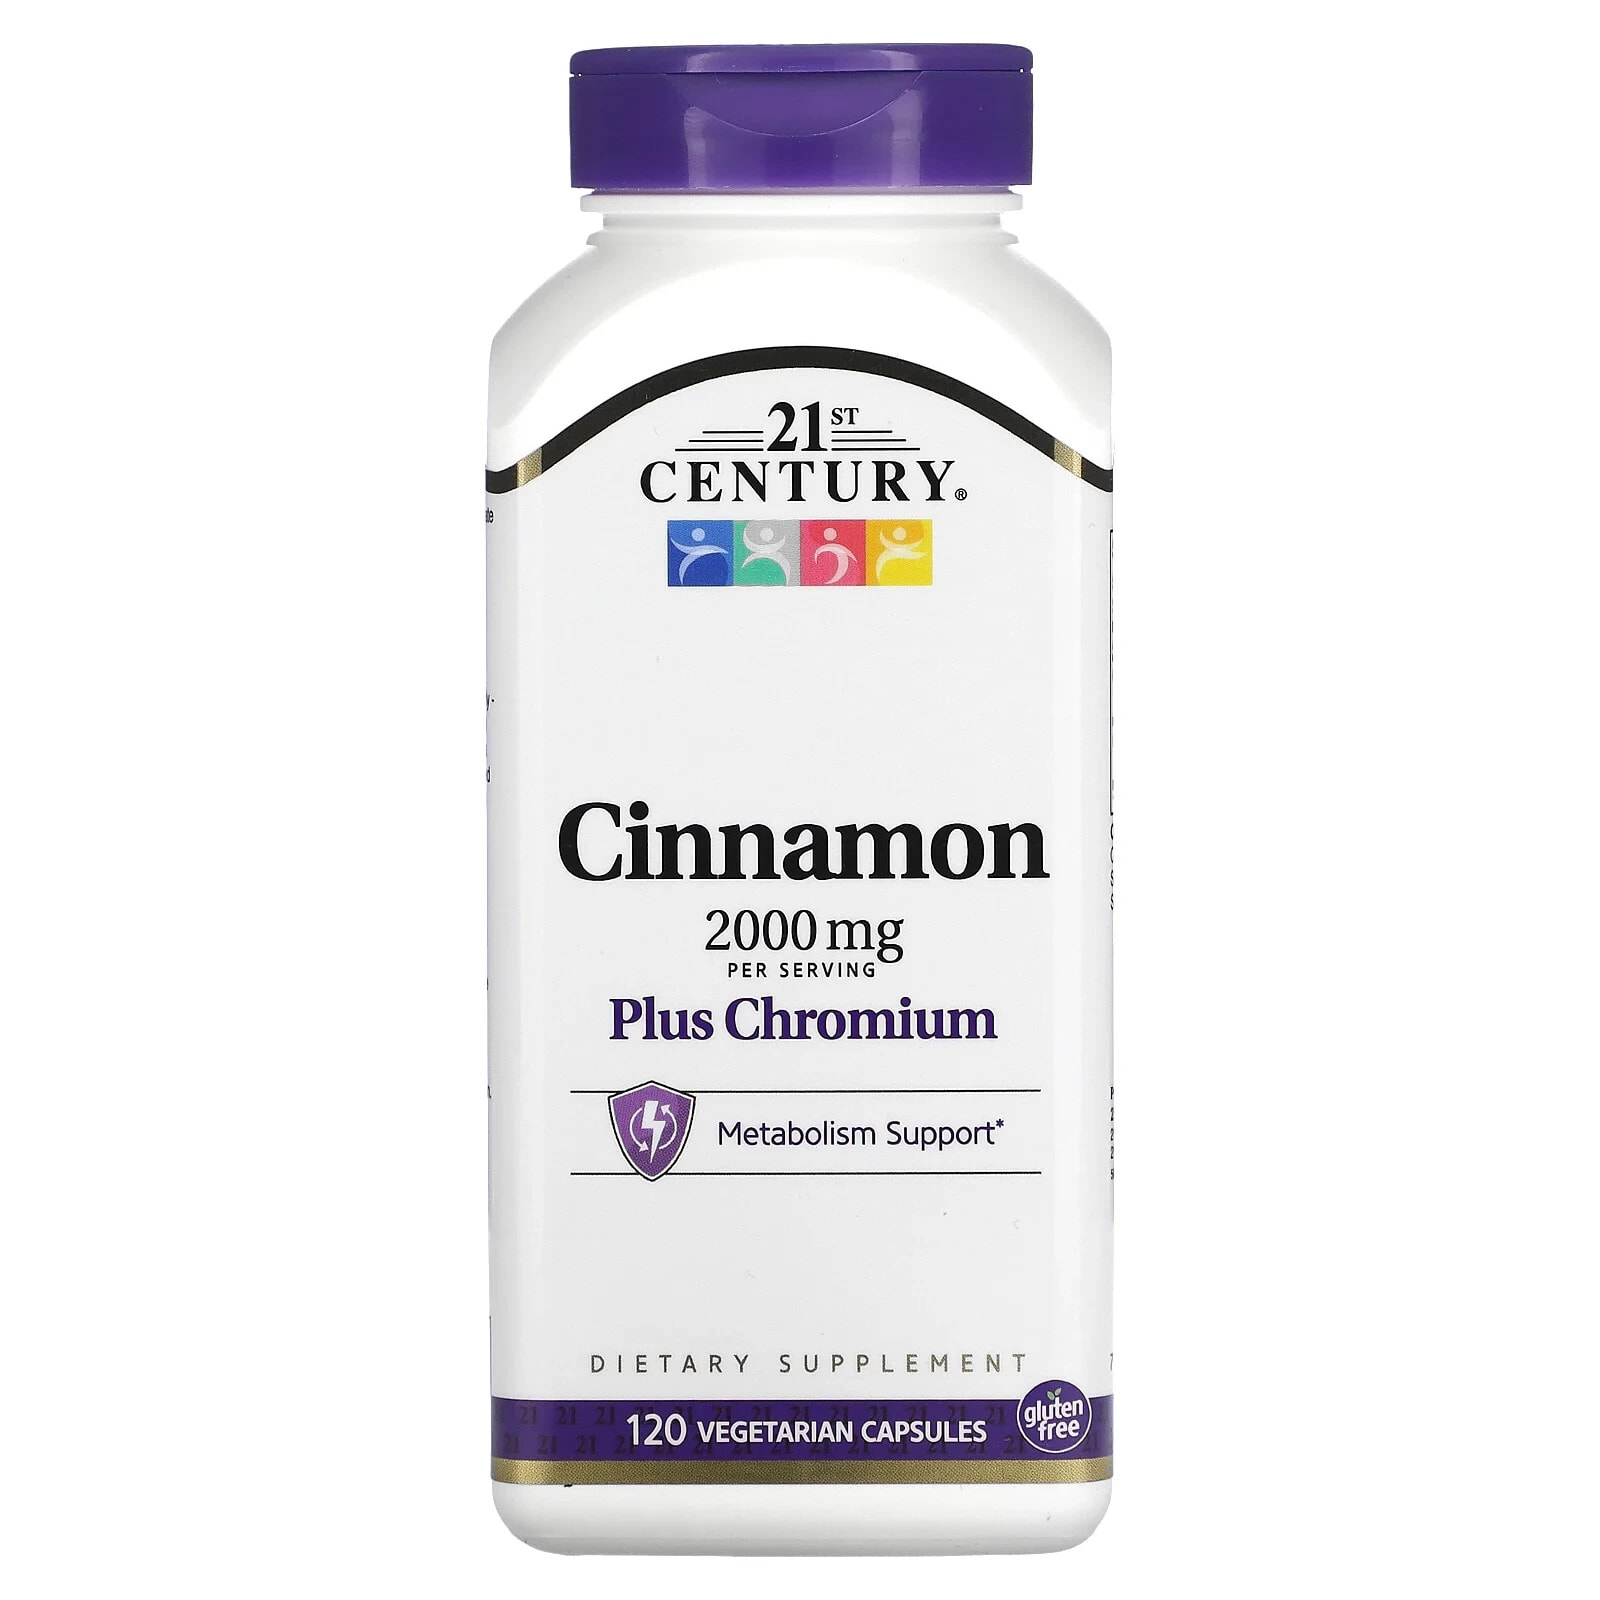 Cinnamon Plus Chromium, 2,000 mg, 120 Vegetarian Capsules (500 mg per Capsule)